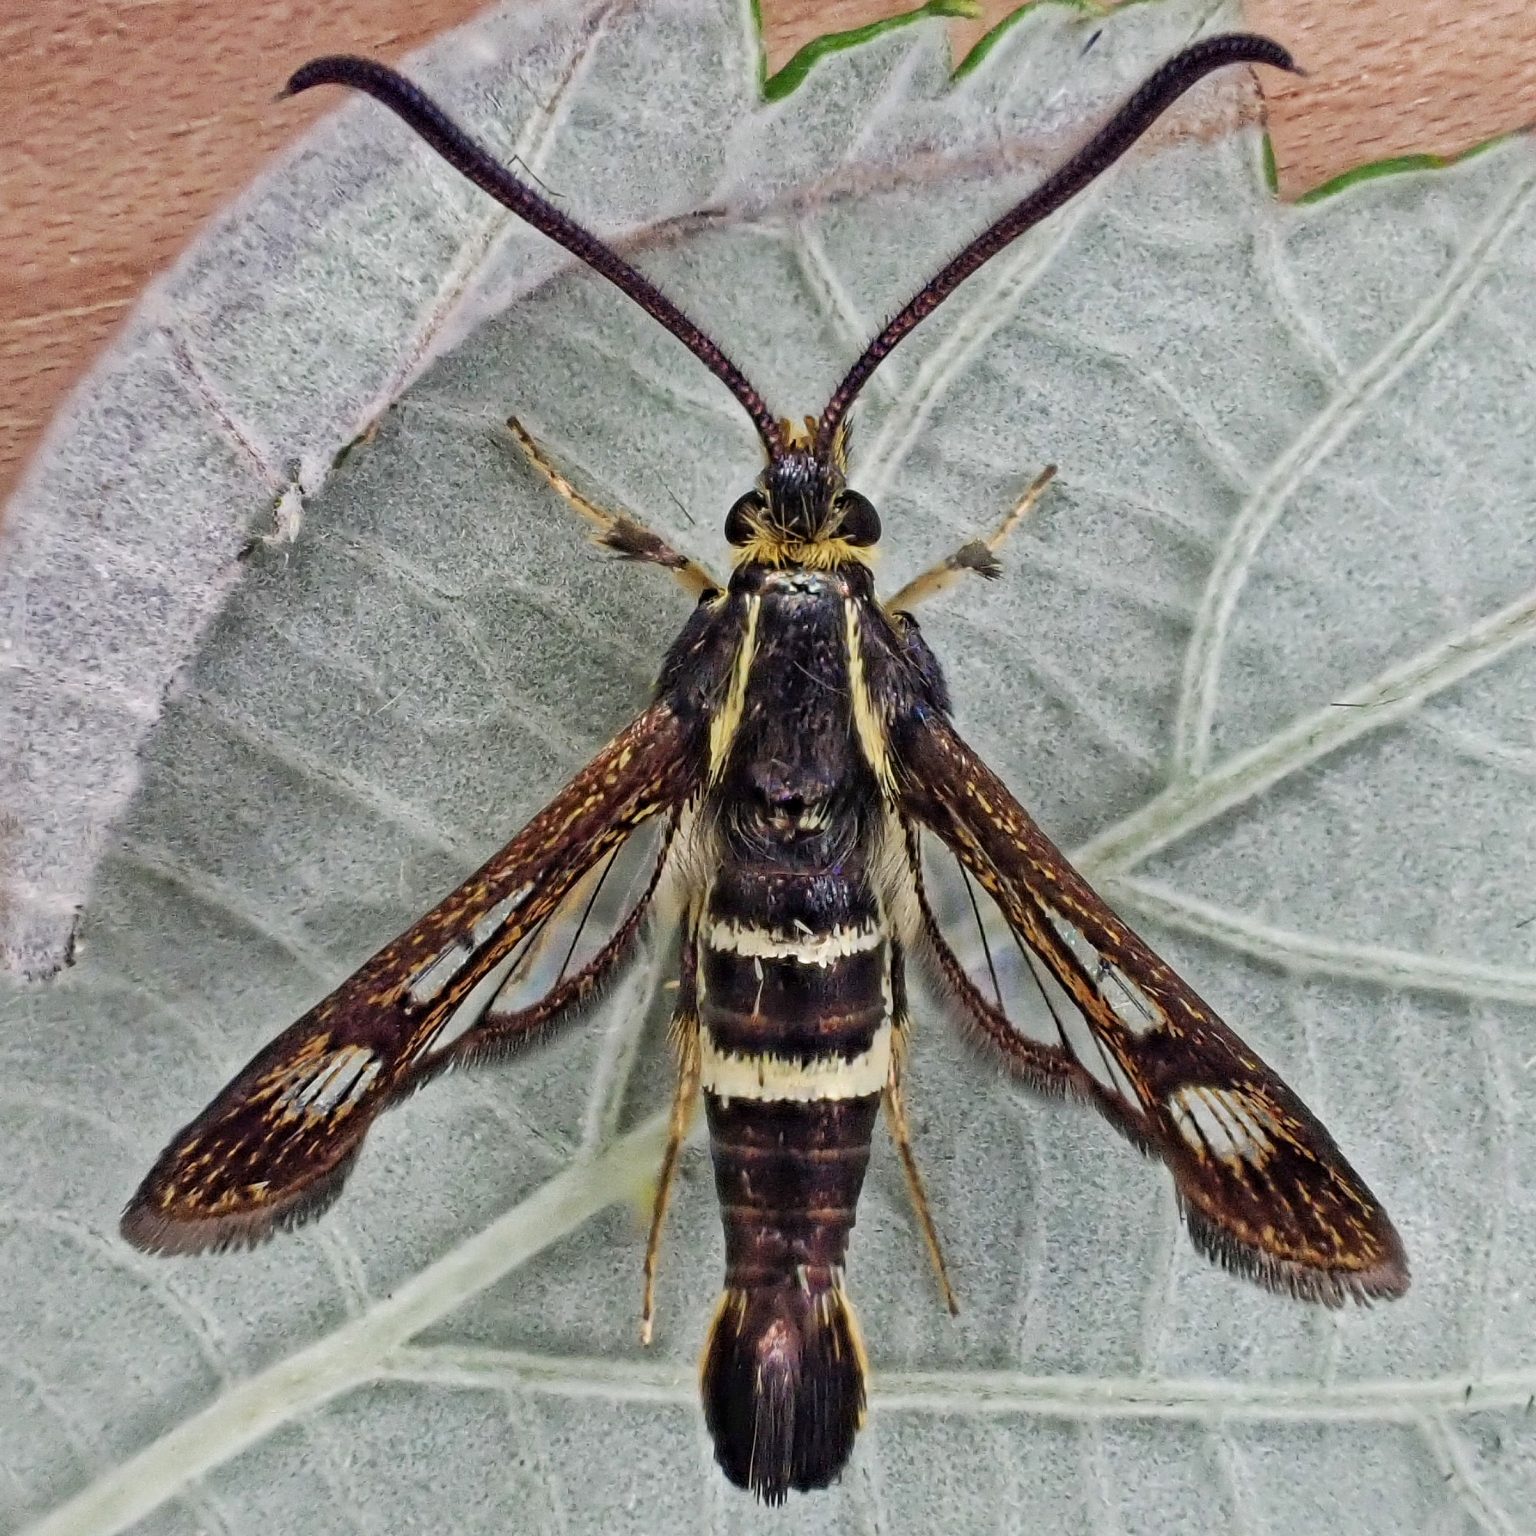 Synanthedon bibiopennis